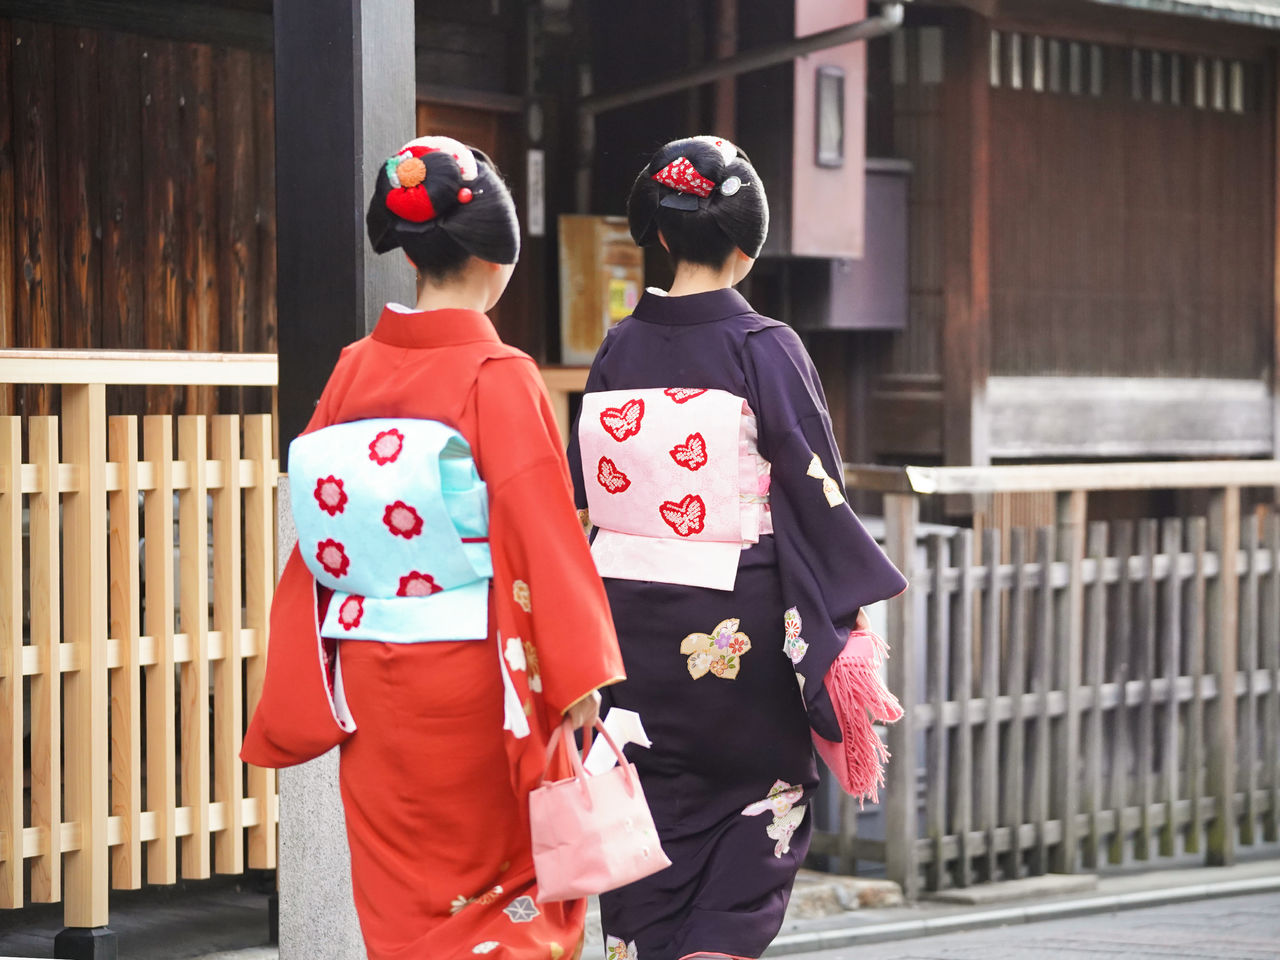 「事始」之日，外出問候新年的祇園藝妓們。她們穿戴的和服、腰帶和飾品通常都是配套的